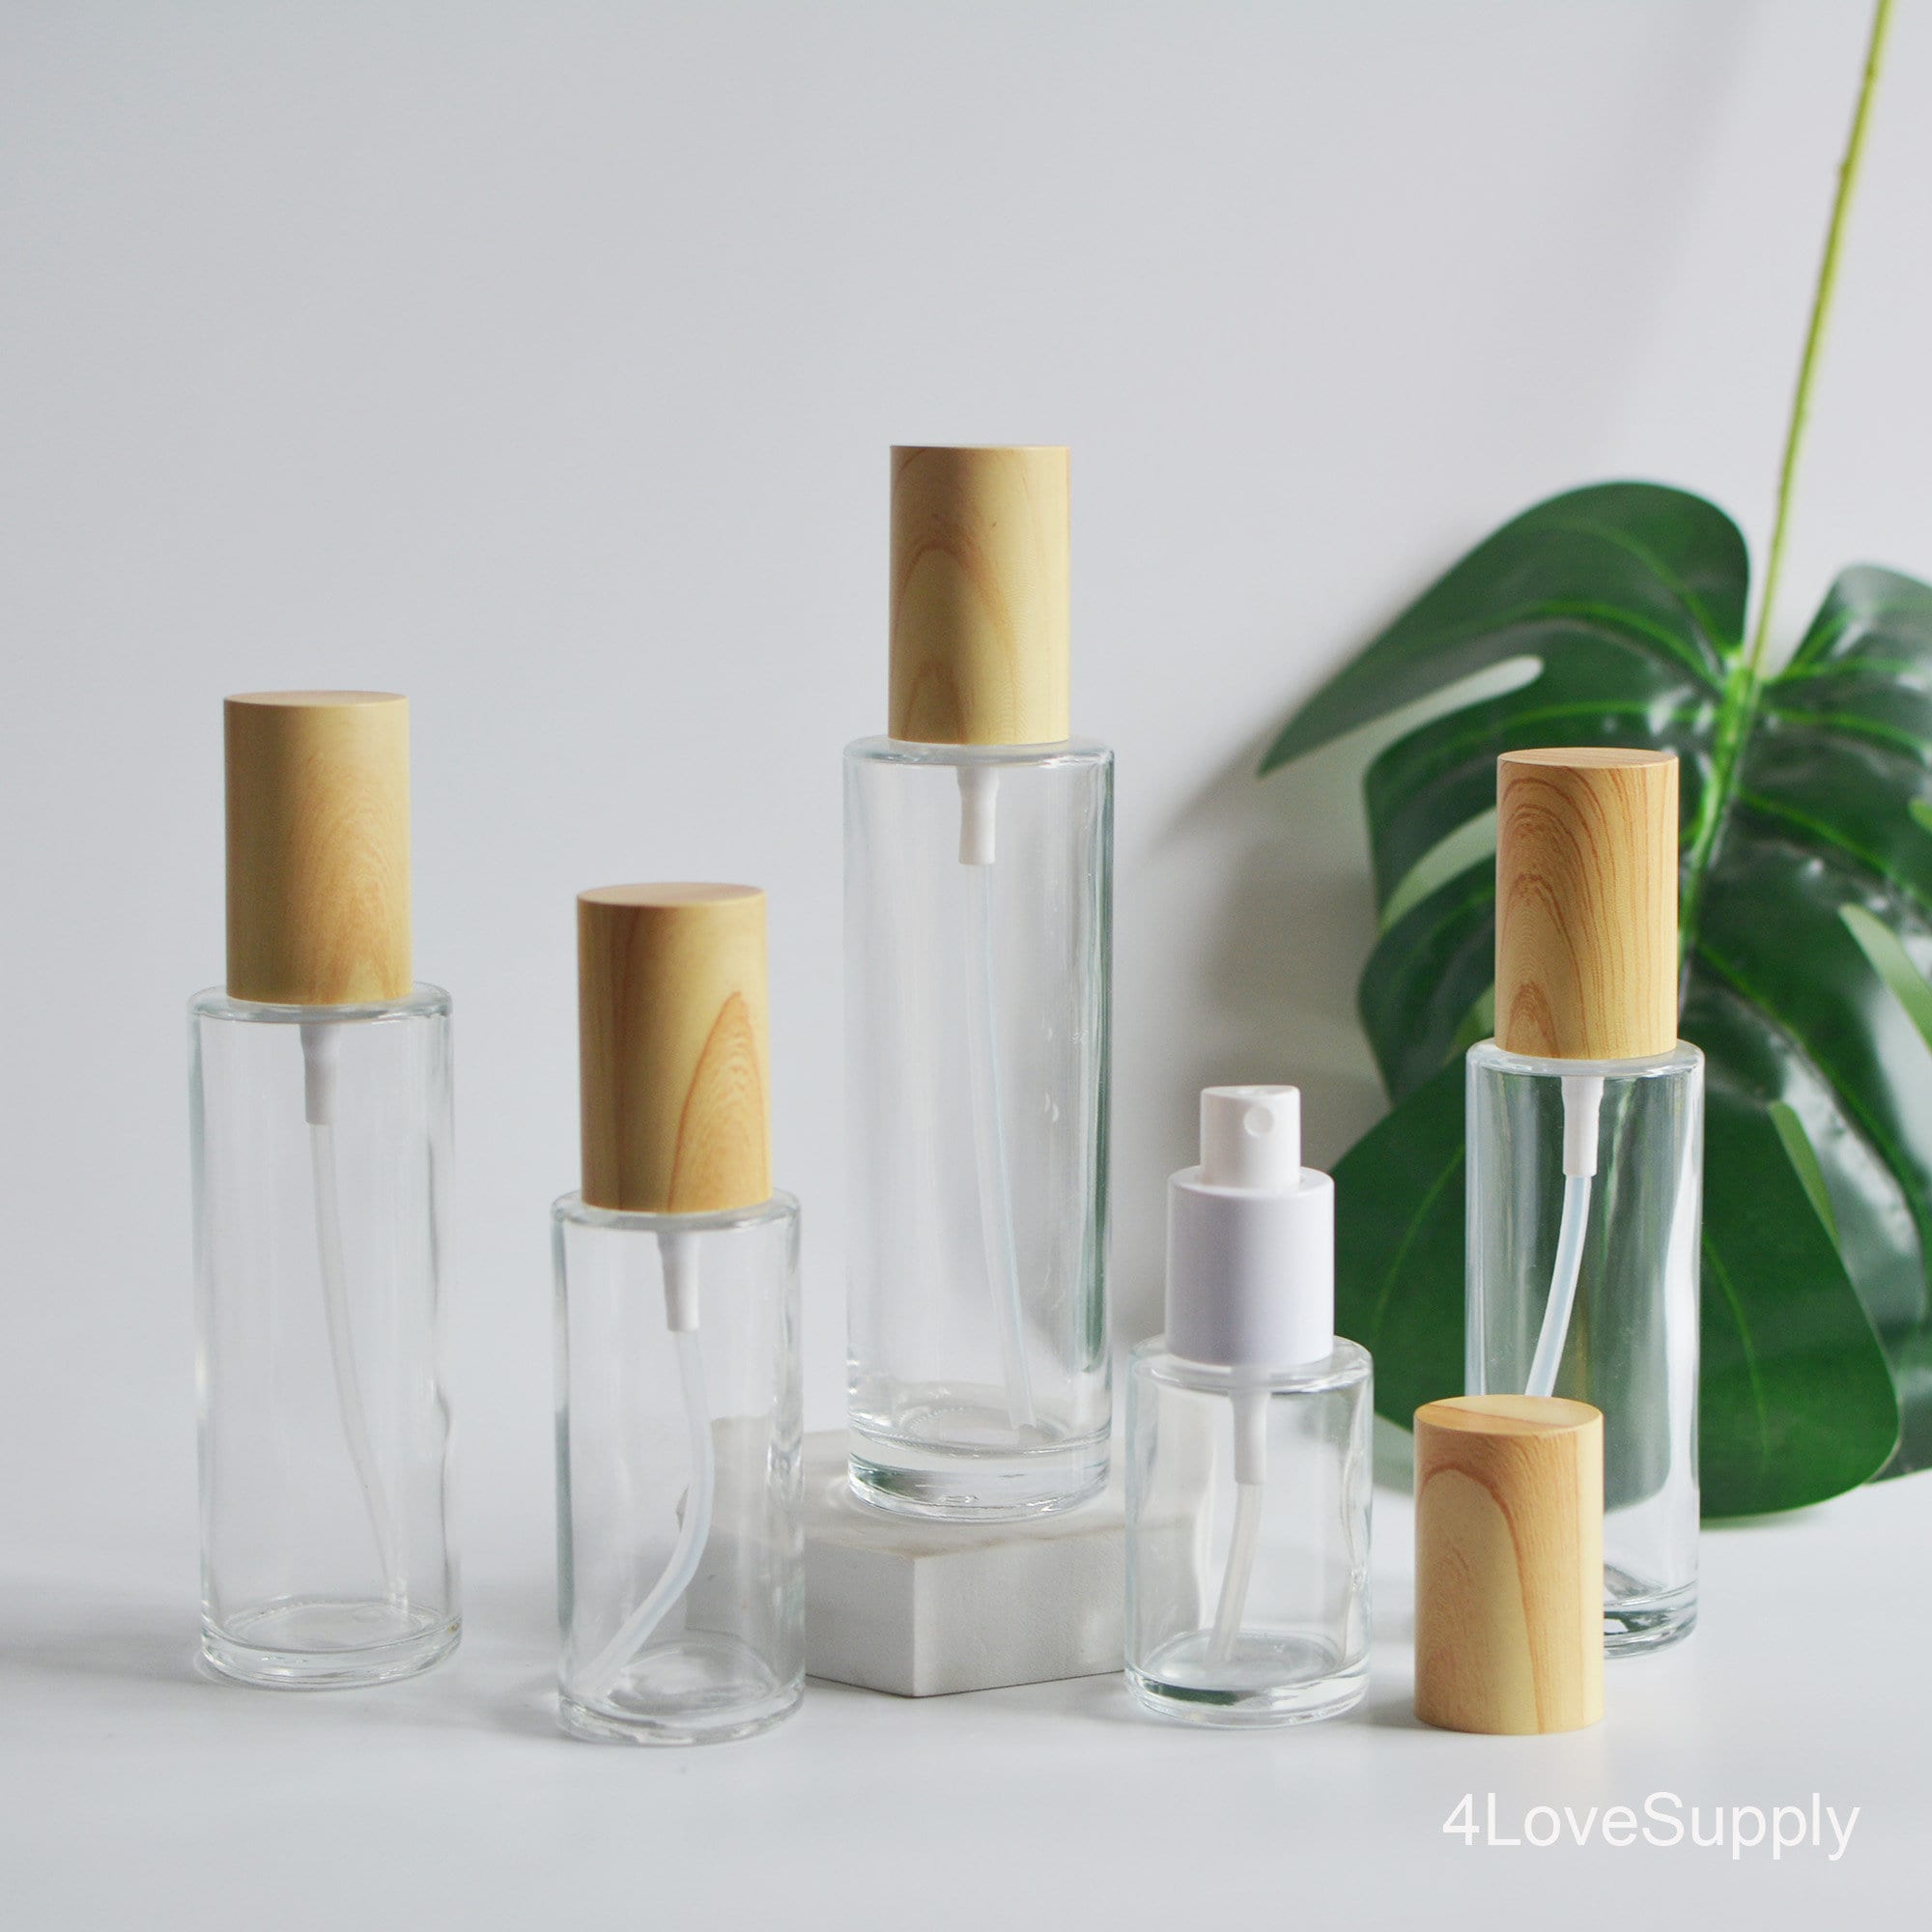 Sample Spray Vial Holder 1 Ml for Perfume / Cologne Bottles With Spray Caps  